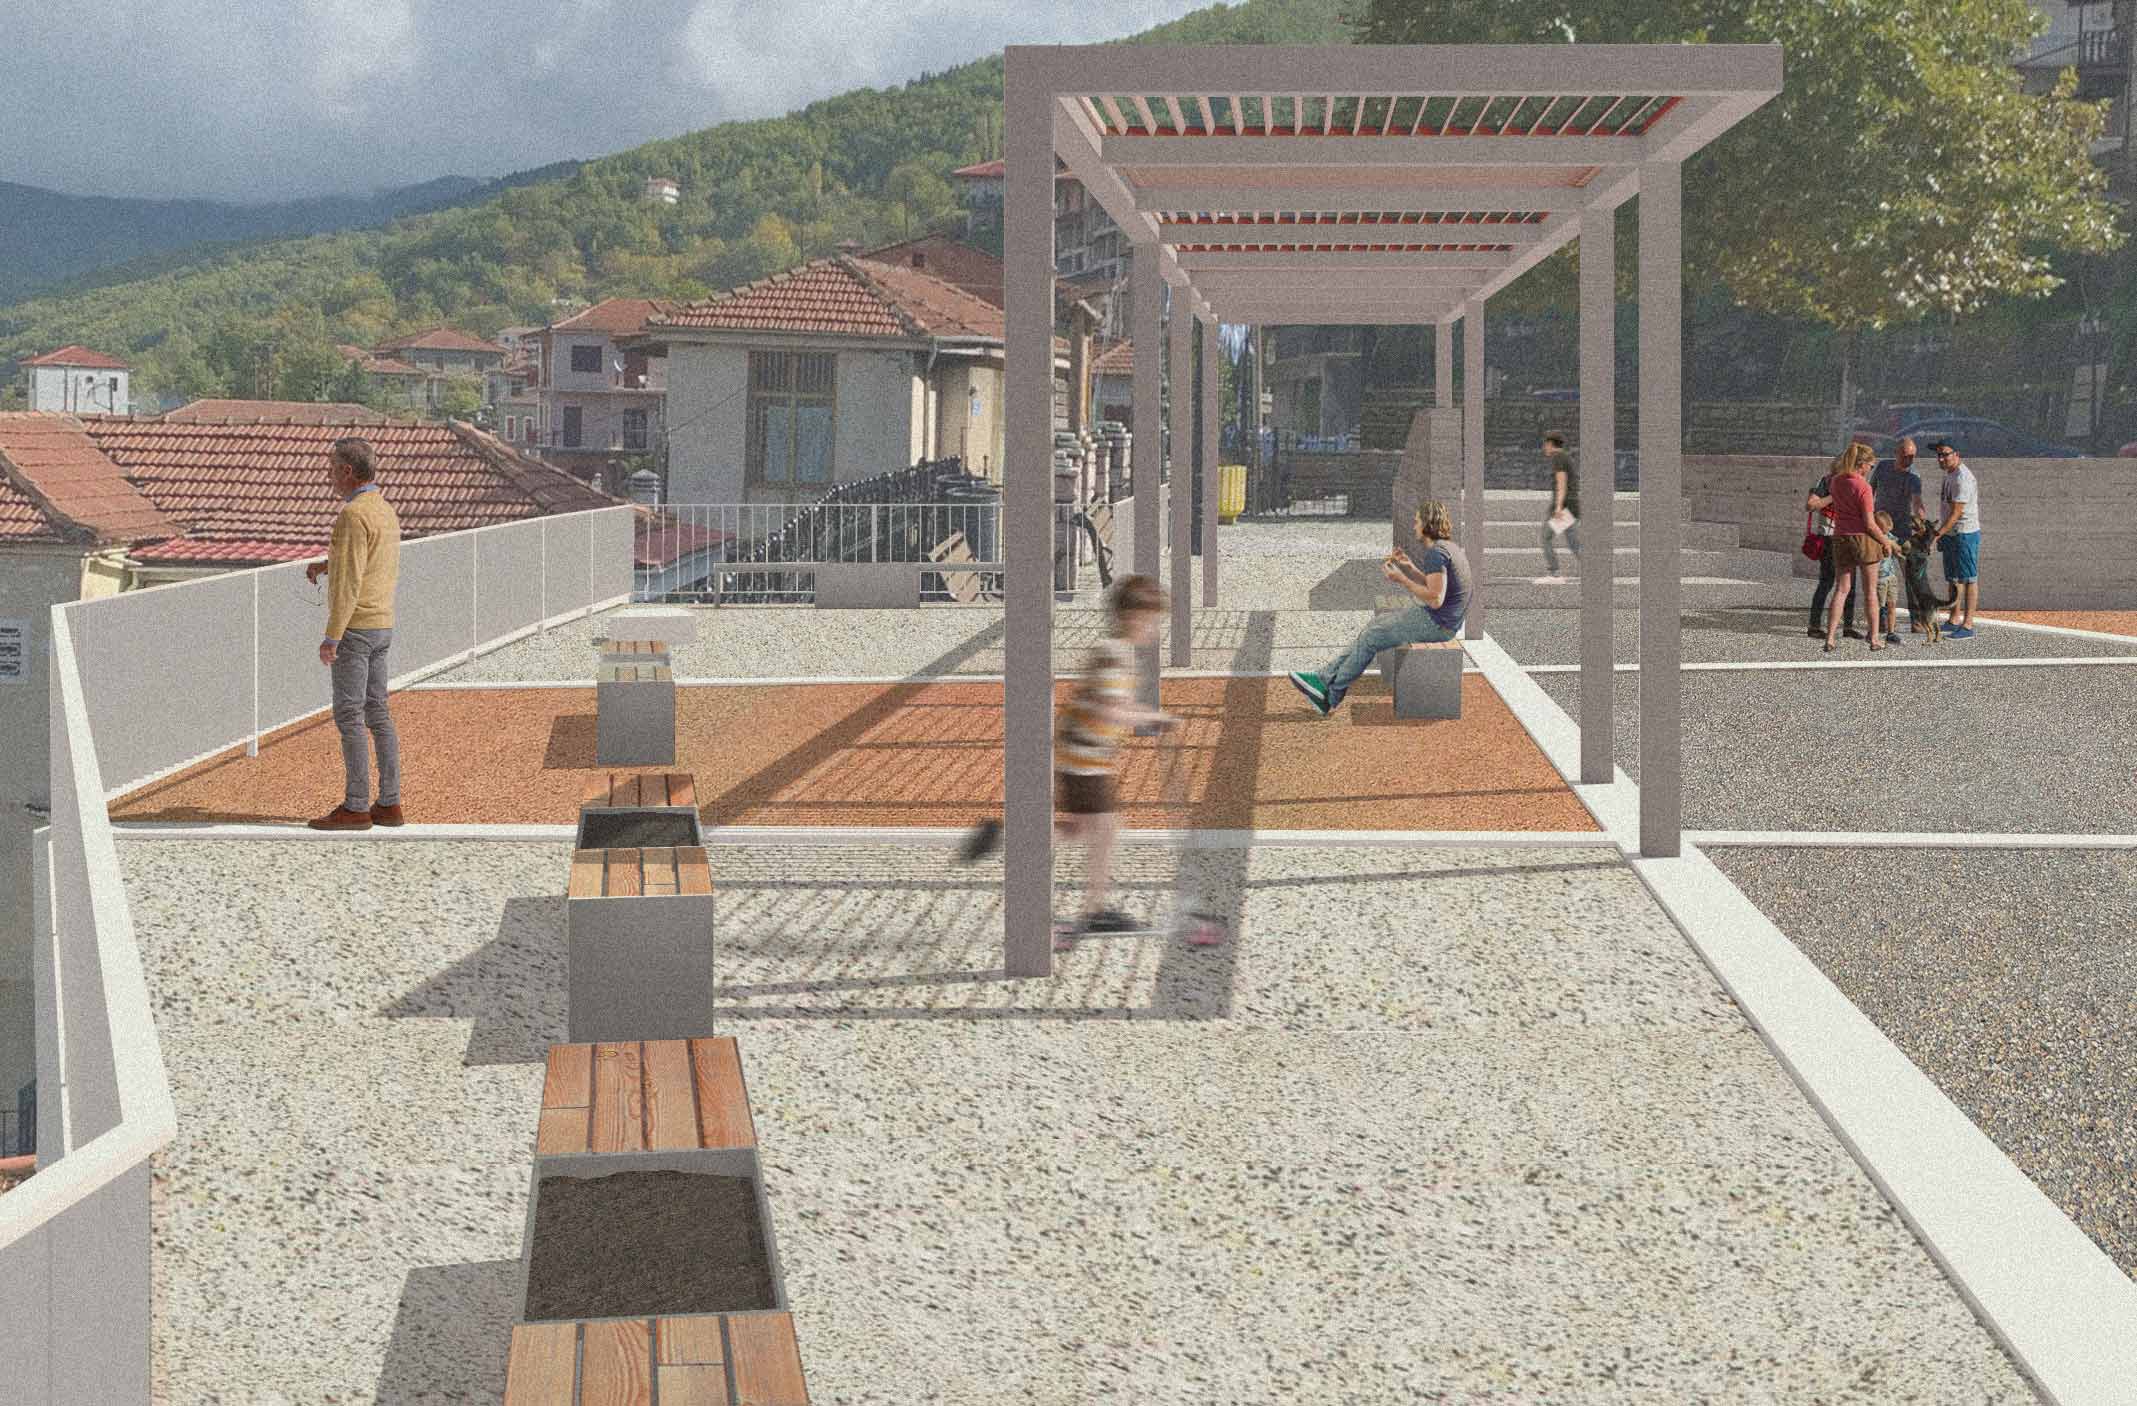 Μελέτη ανάπλασης πλατείας παραδοσιακού οικισμού Φουρνά Δήμου Καρπενησίου